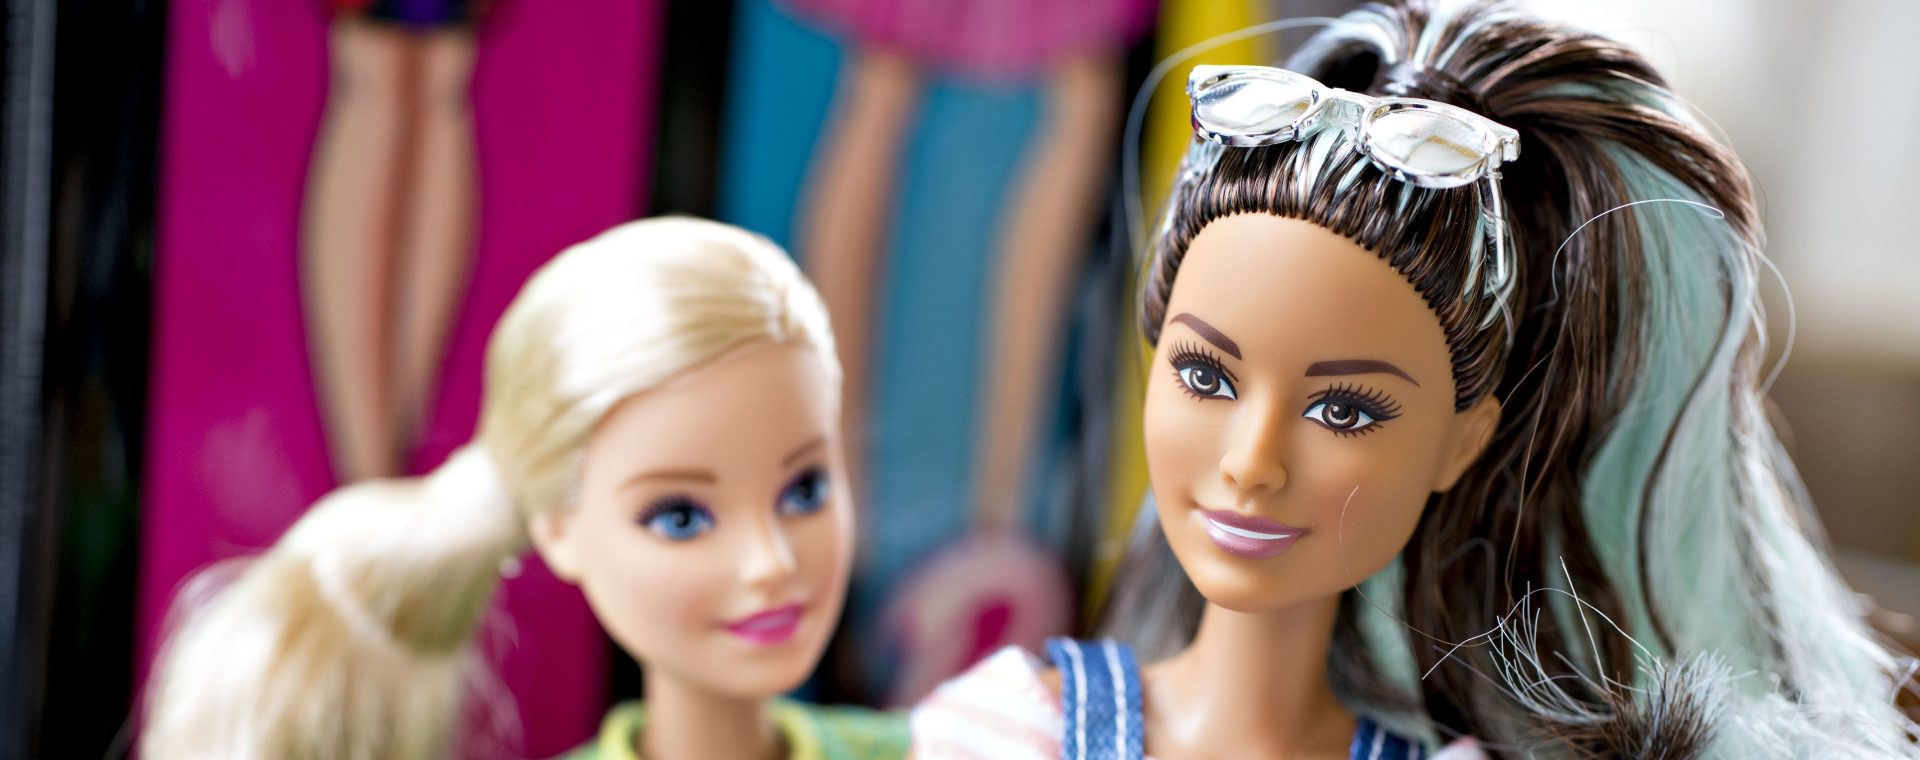 Boneka Barbie milik Mattel Inc. dipamerkan di Tiskilwa, Illinois, AS, Senin, (16/4 - 2018).  Bloomberg / Daniel Acker